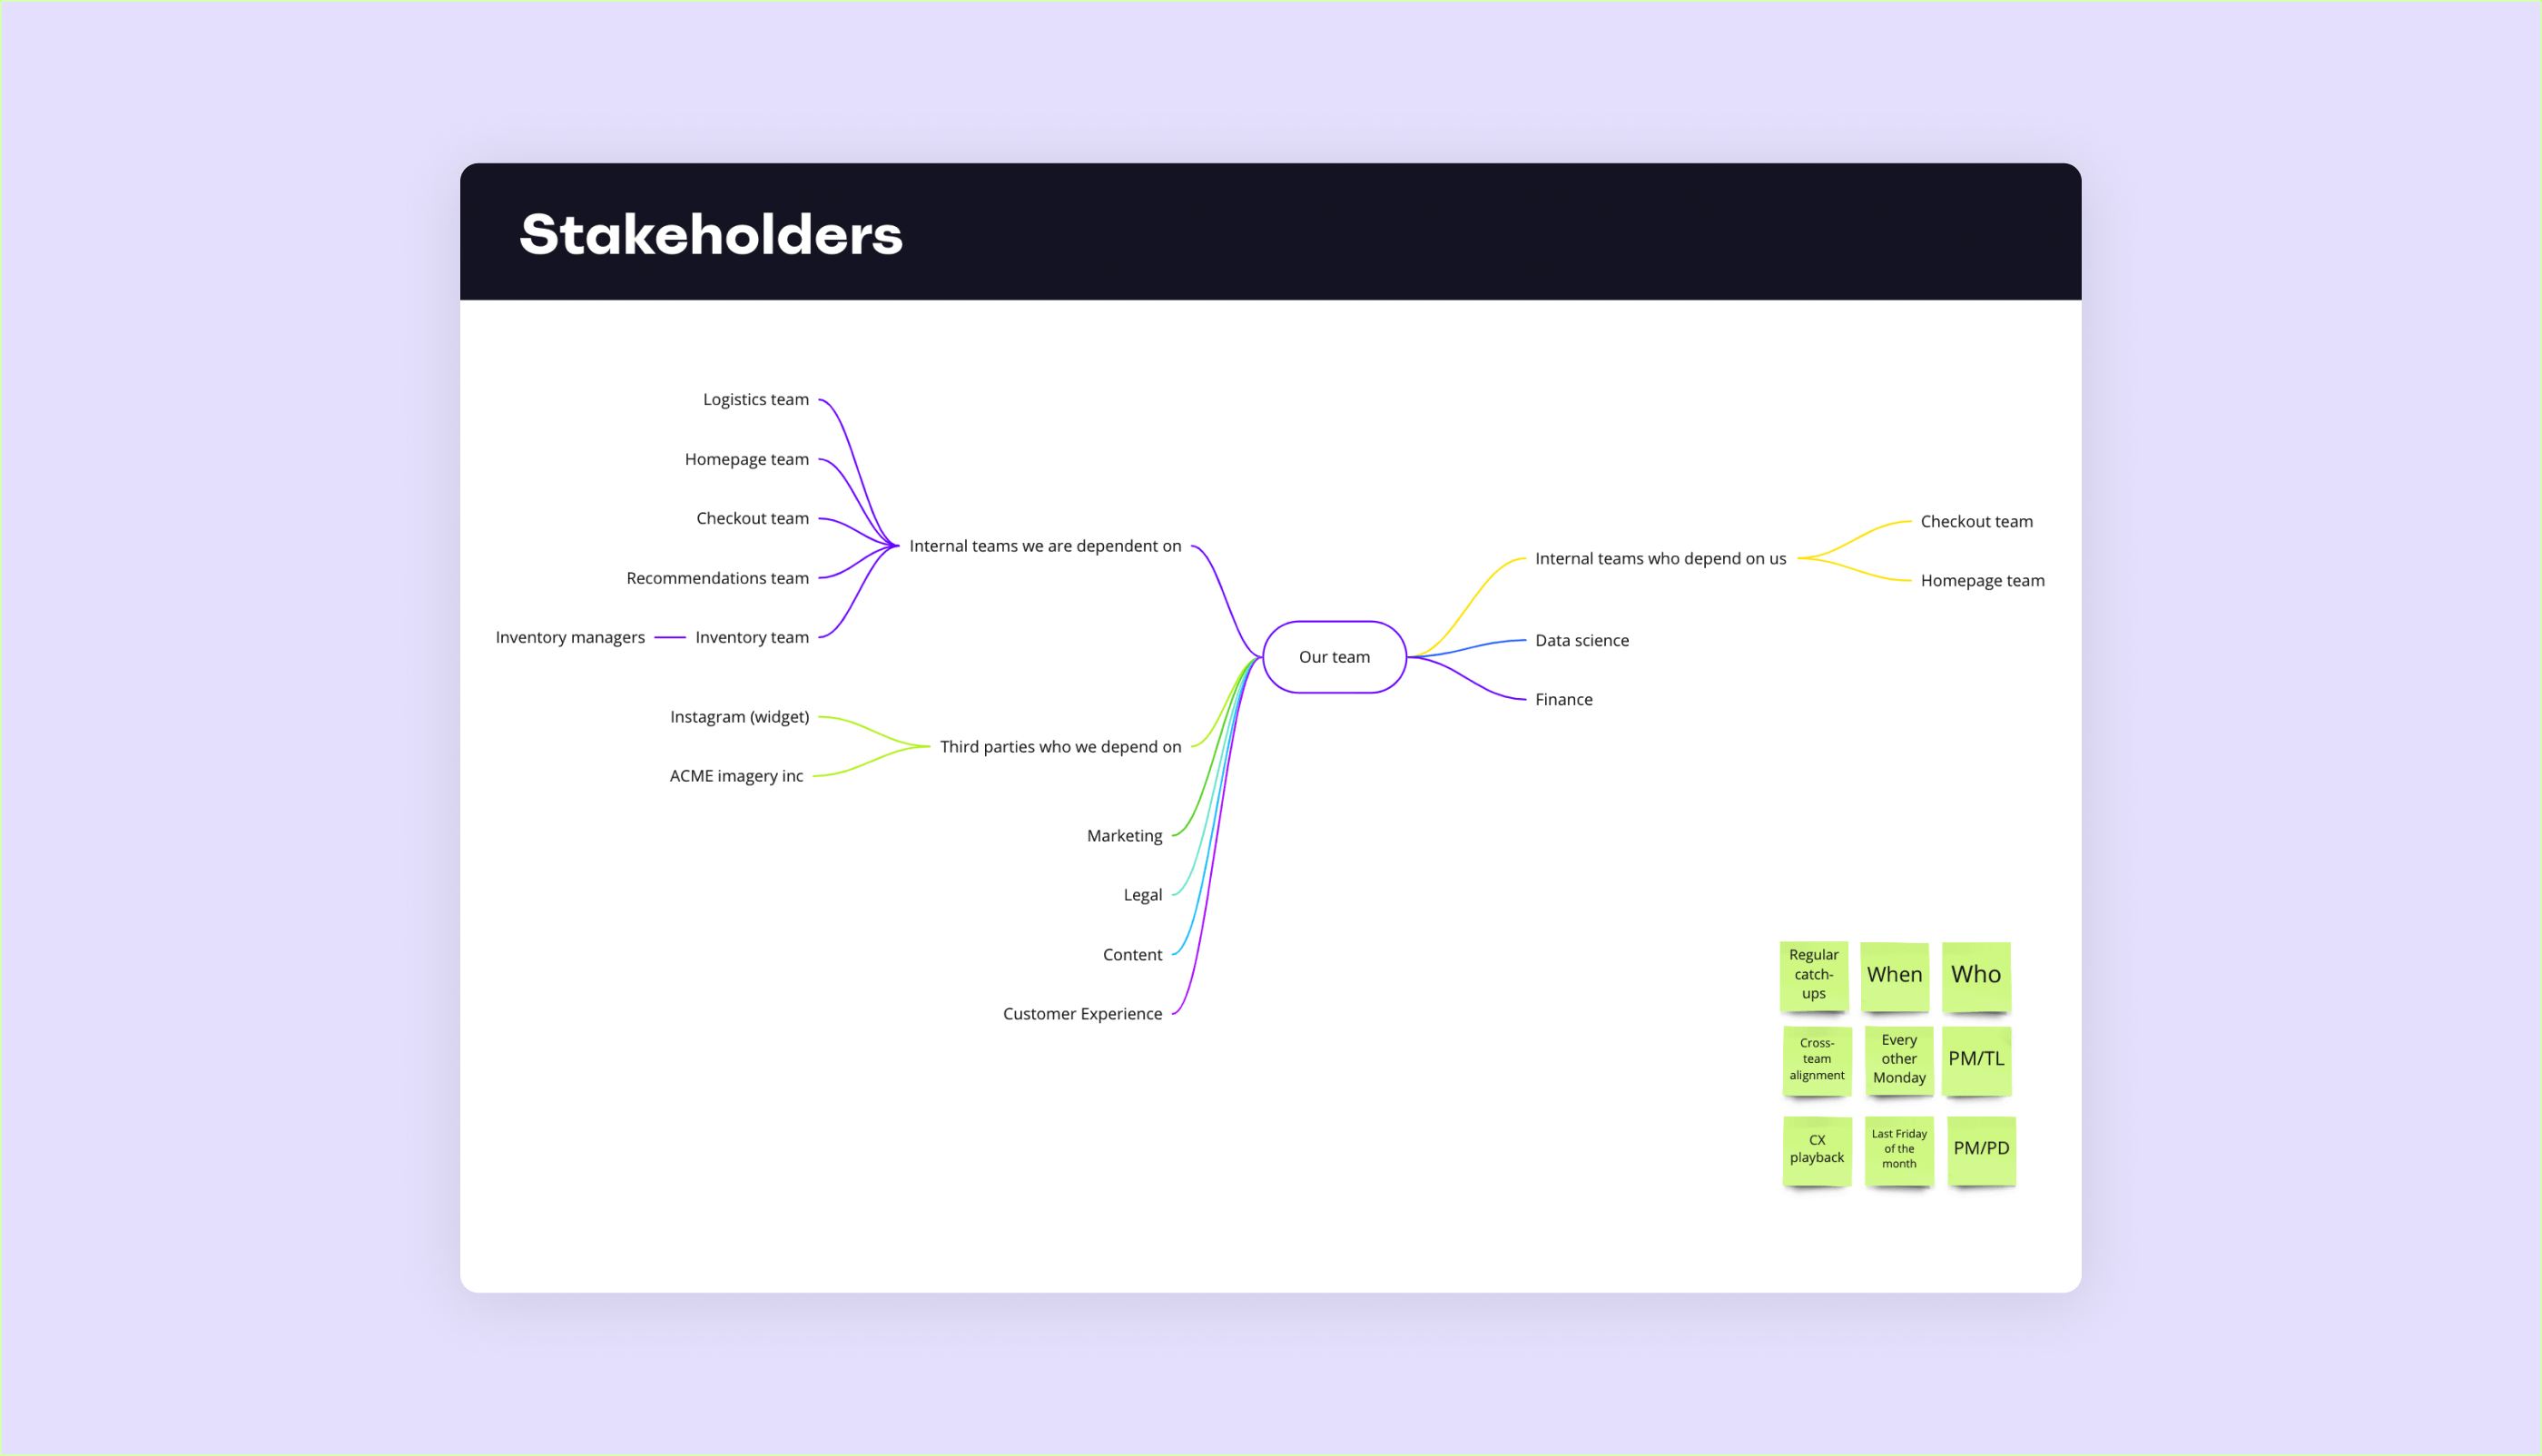 Stakeholder map